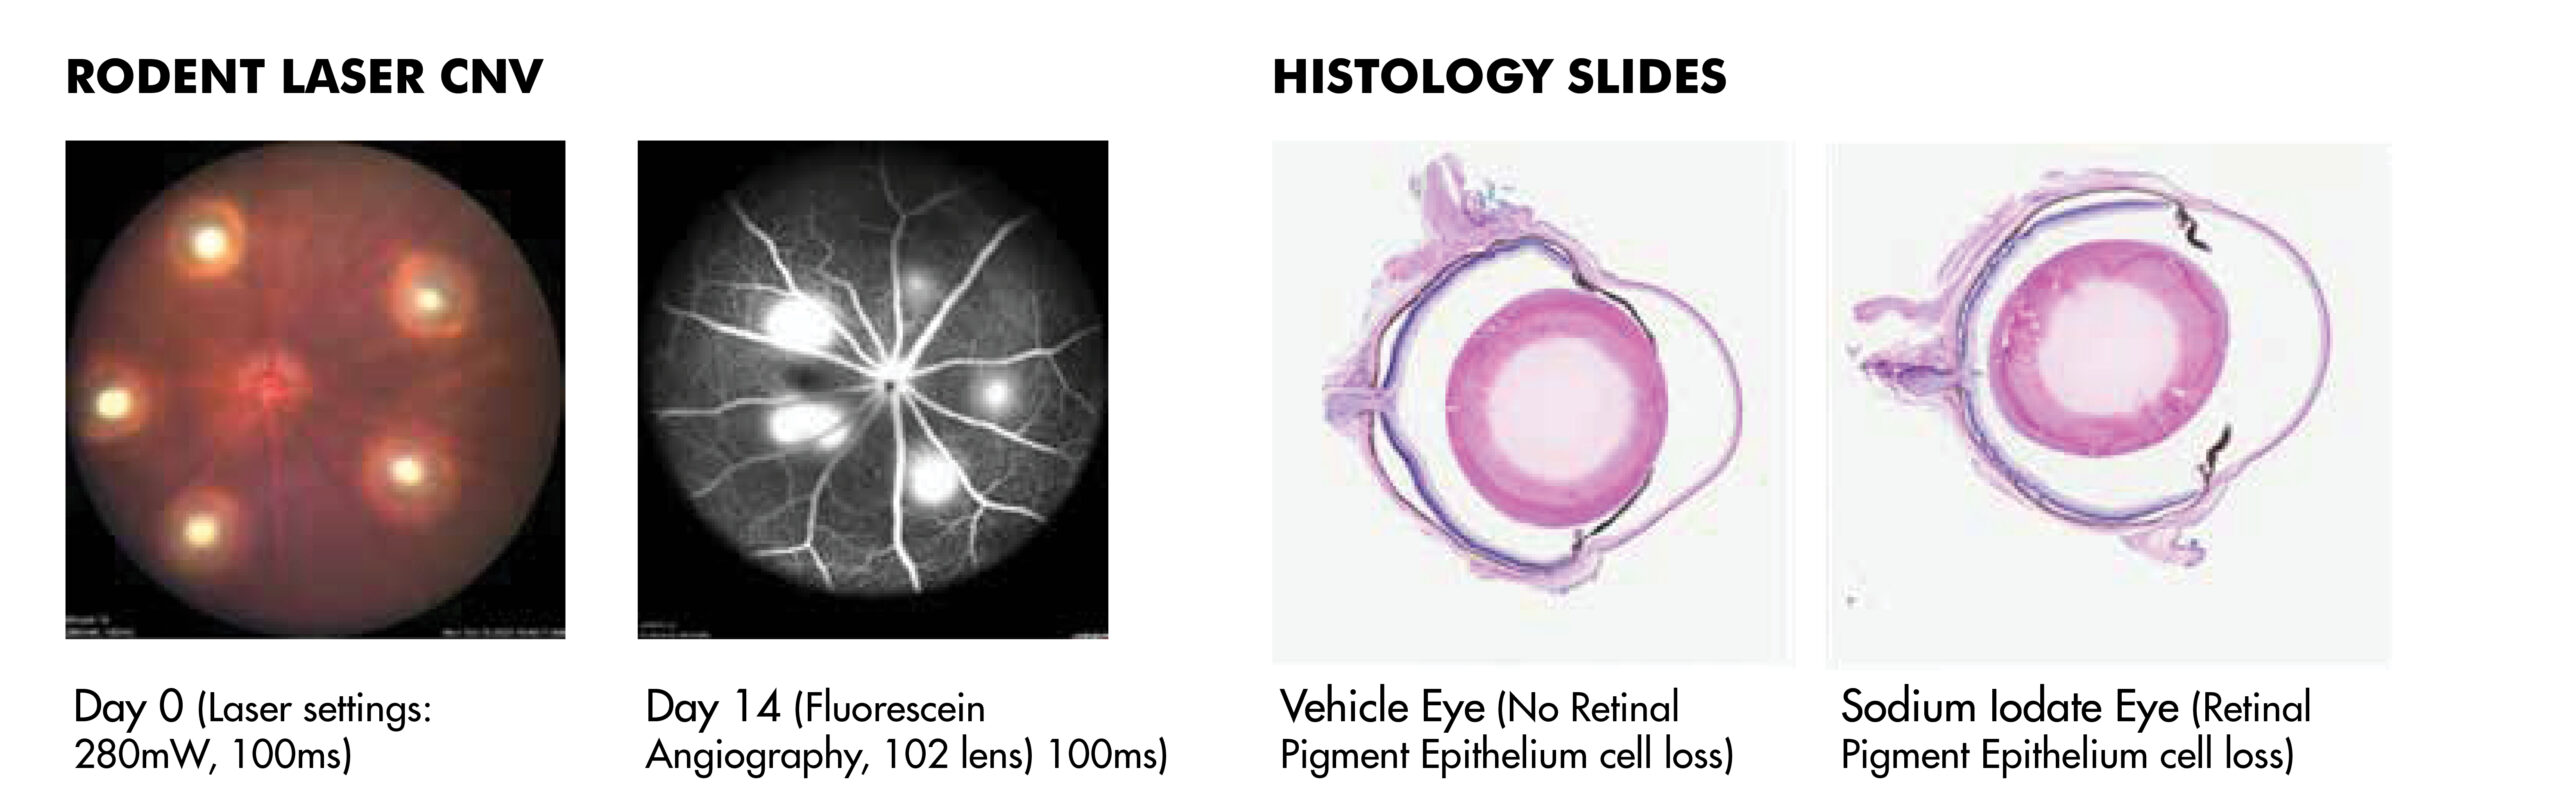 Rodent Laser CNV and Histology Slides